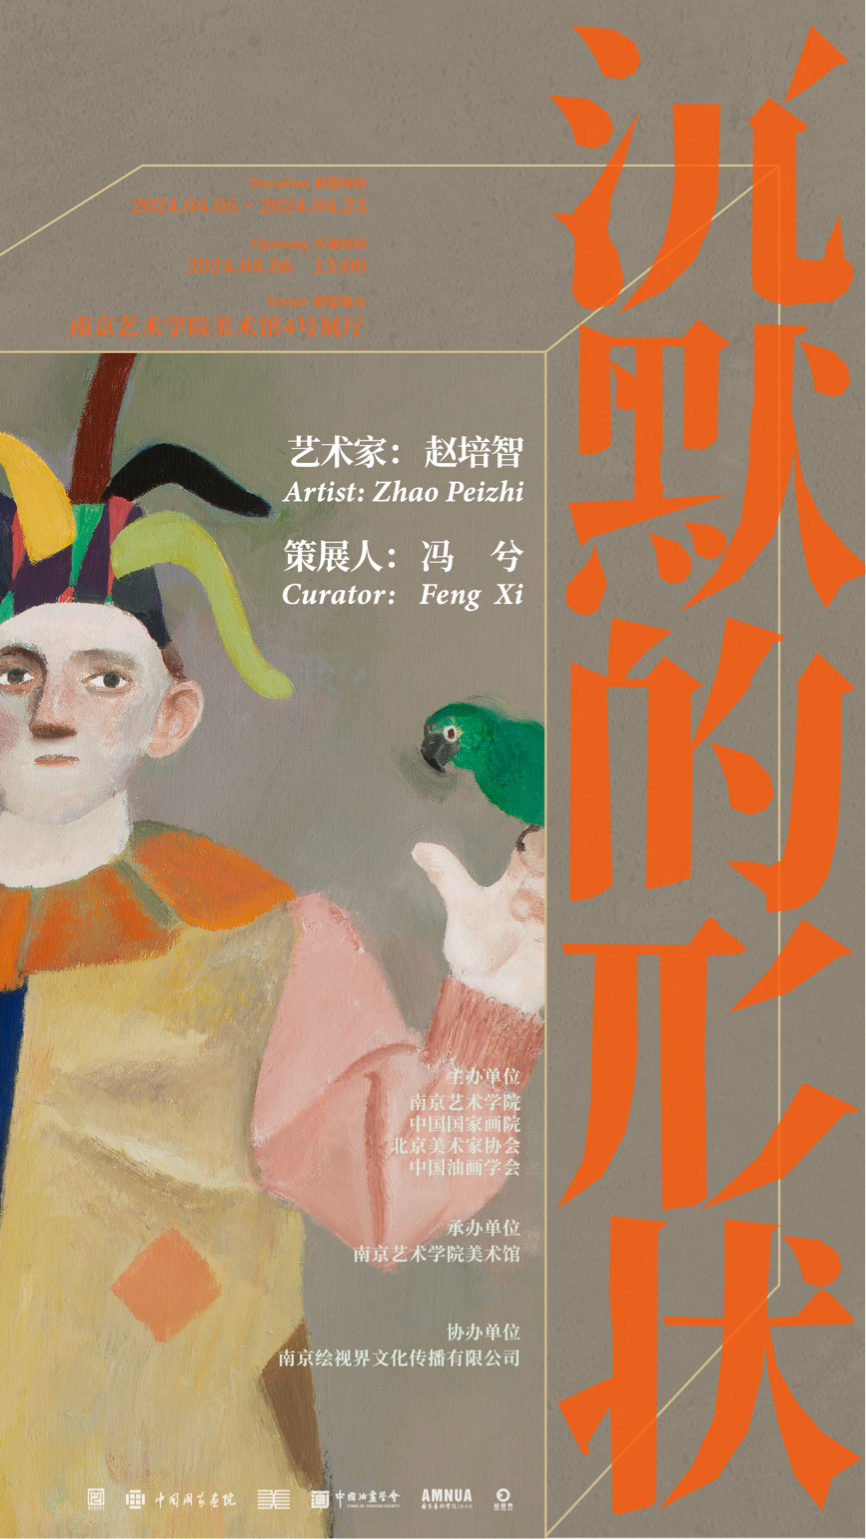 主题与形式的和谐统一，“沉默的形状——赵培智个展”在南京开幕，展期至4月23日